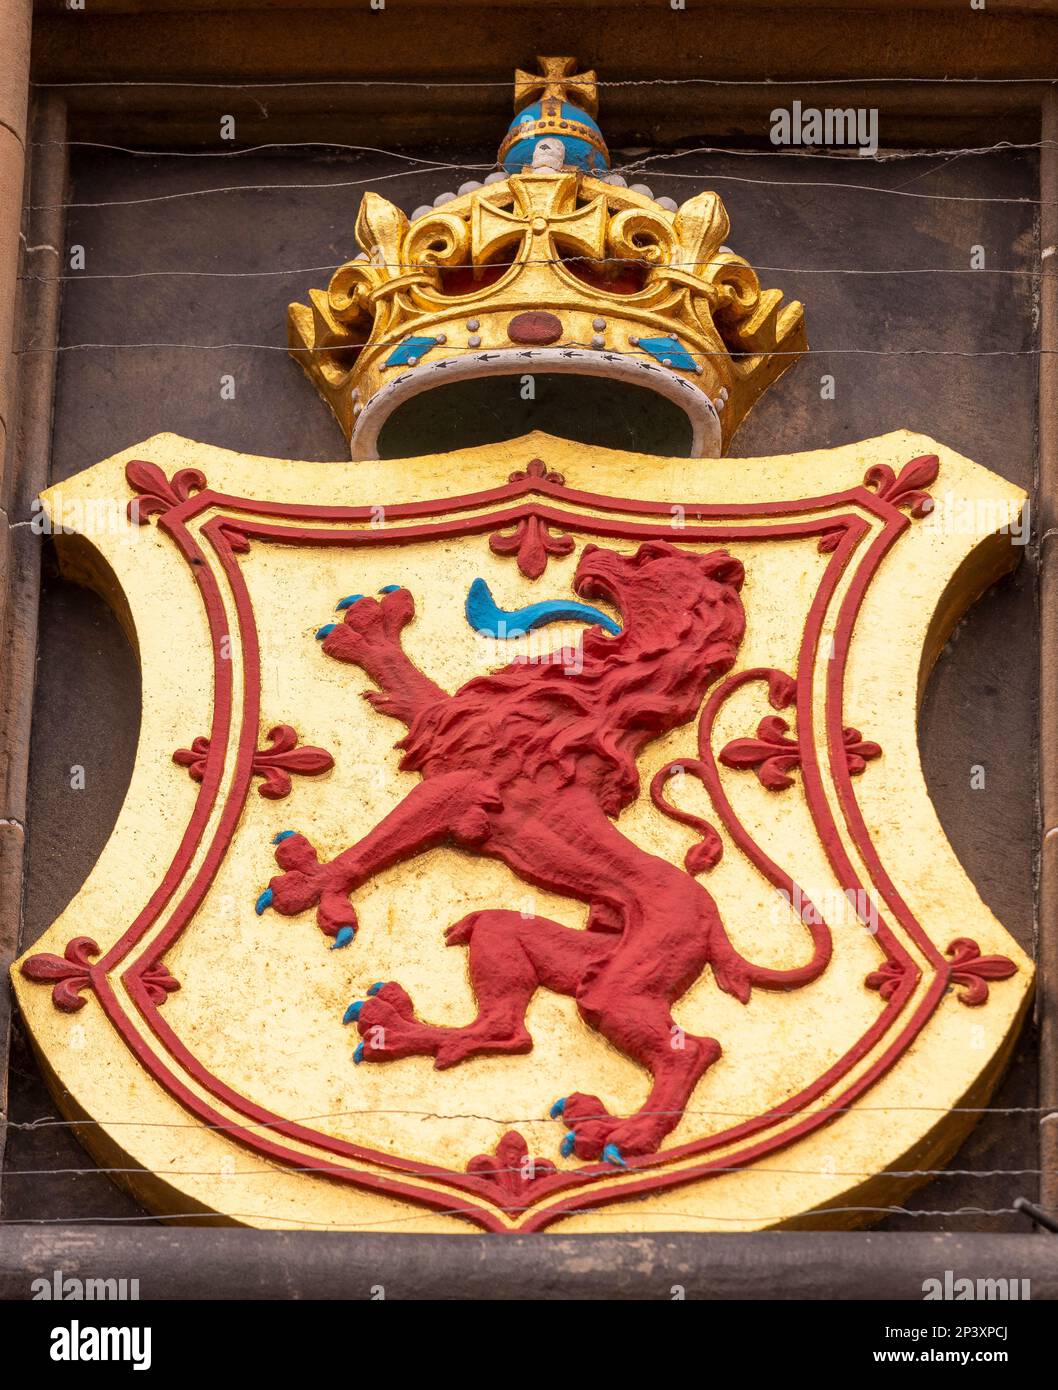 ÉDIMBOURG, ÉCOSSE, EUROPE - Royal Coat of Arms à l'entrée du château d'Édimbourg. Inclut le Lion rampant et la couronne royale d'Écosse. Banque D'Images